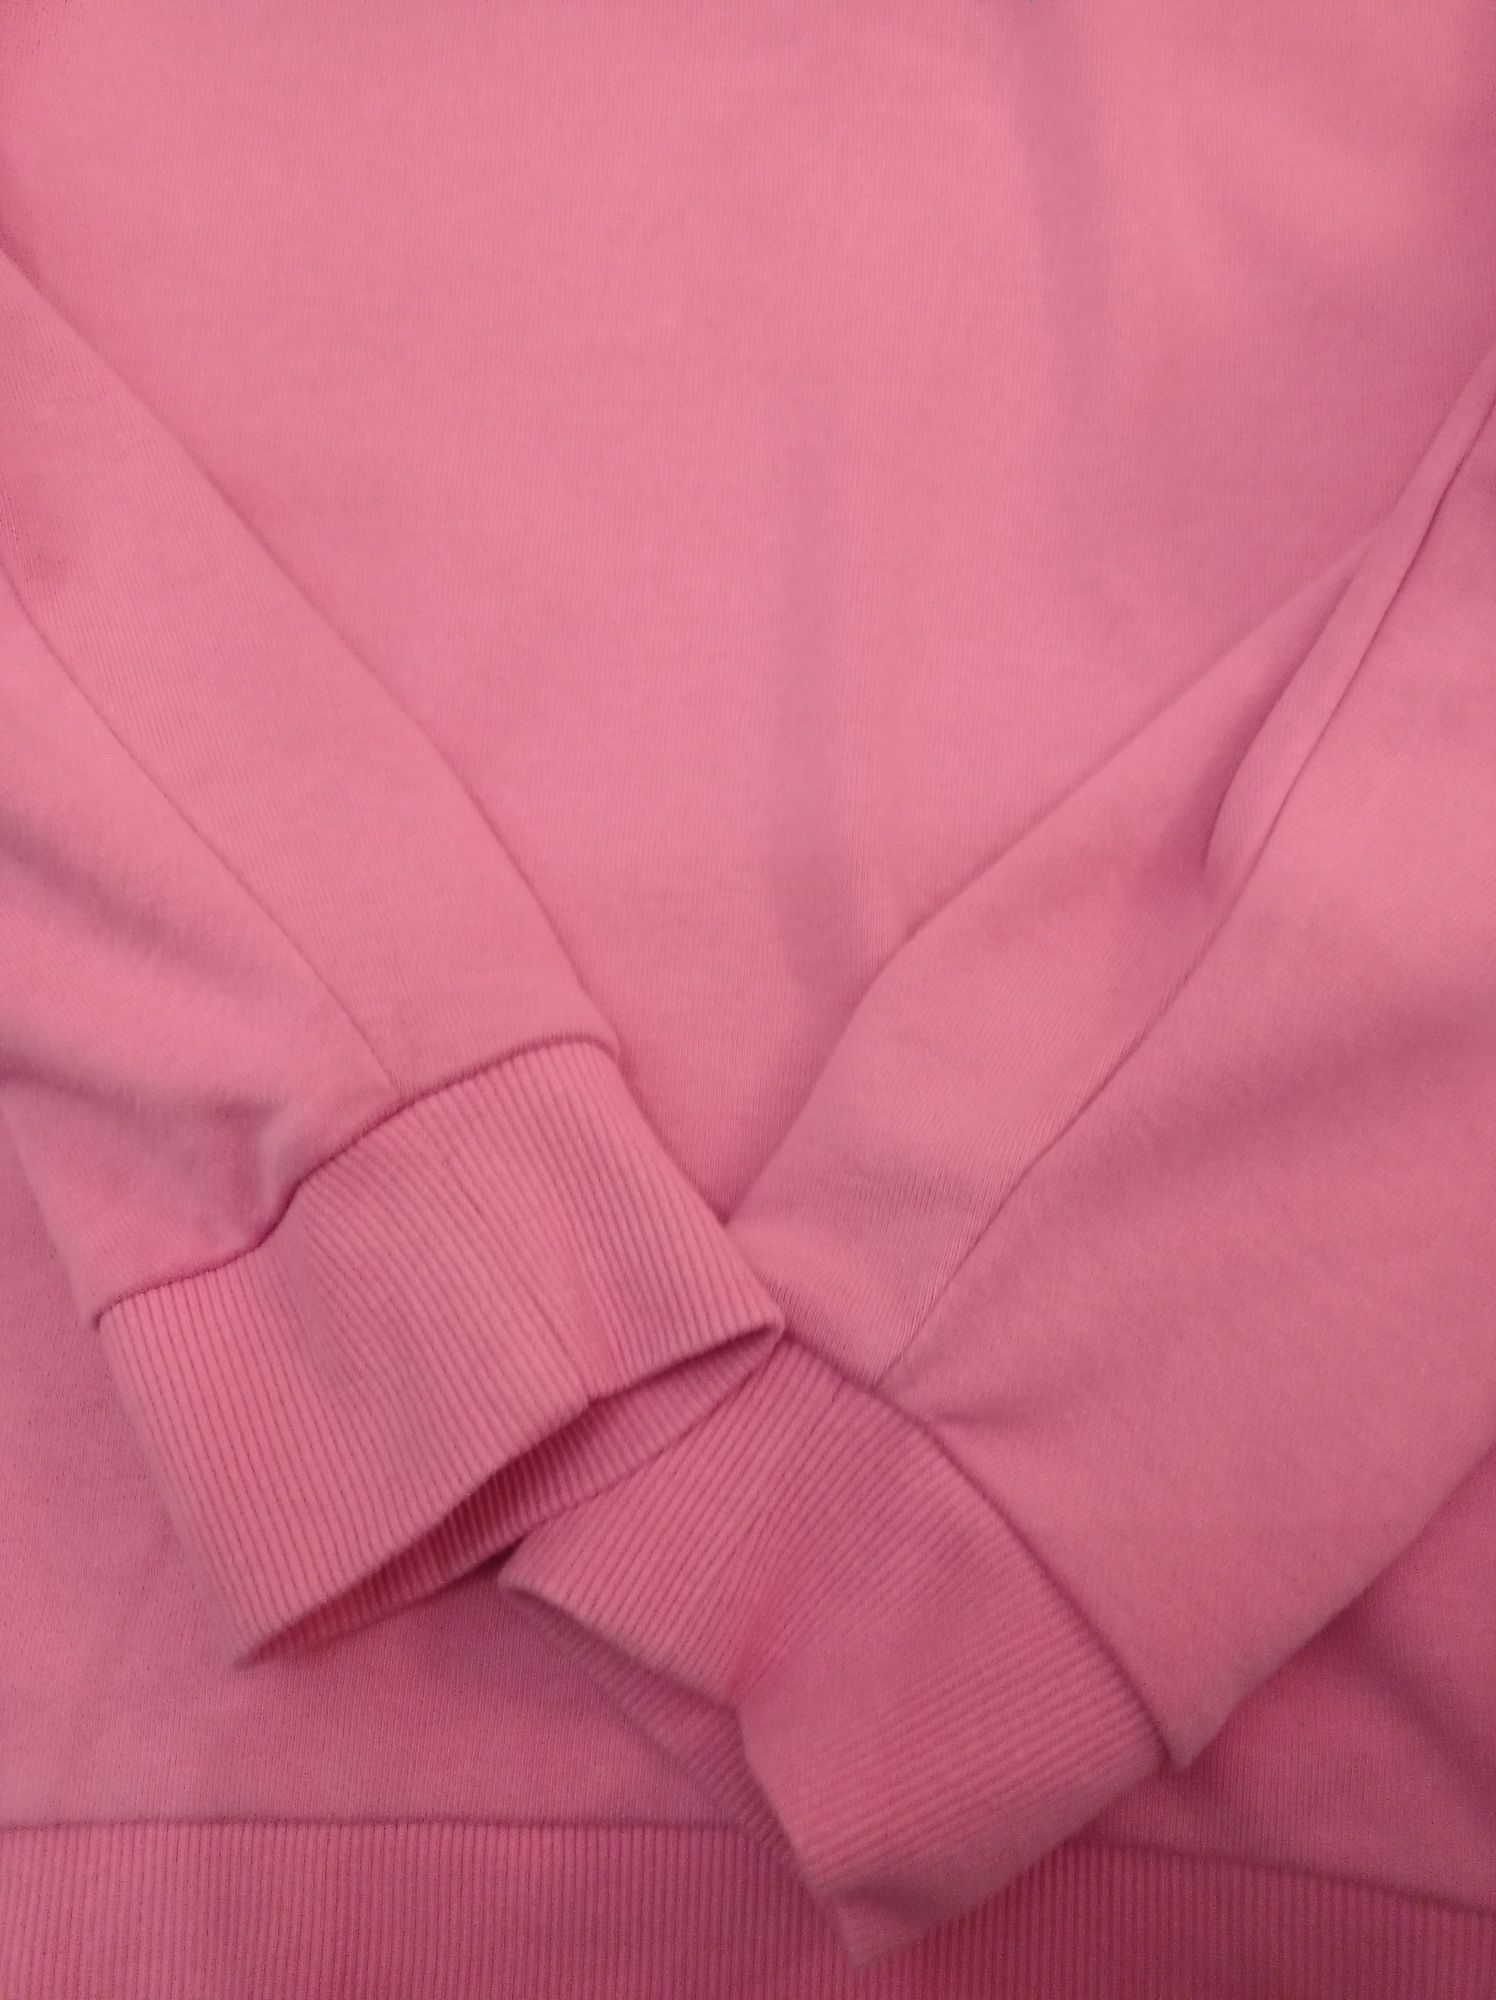 Жіноче худі, кофта Marks & Spencer, розова, XL